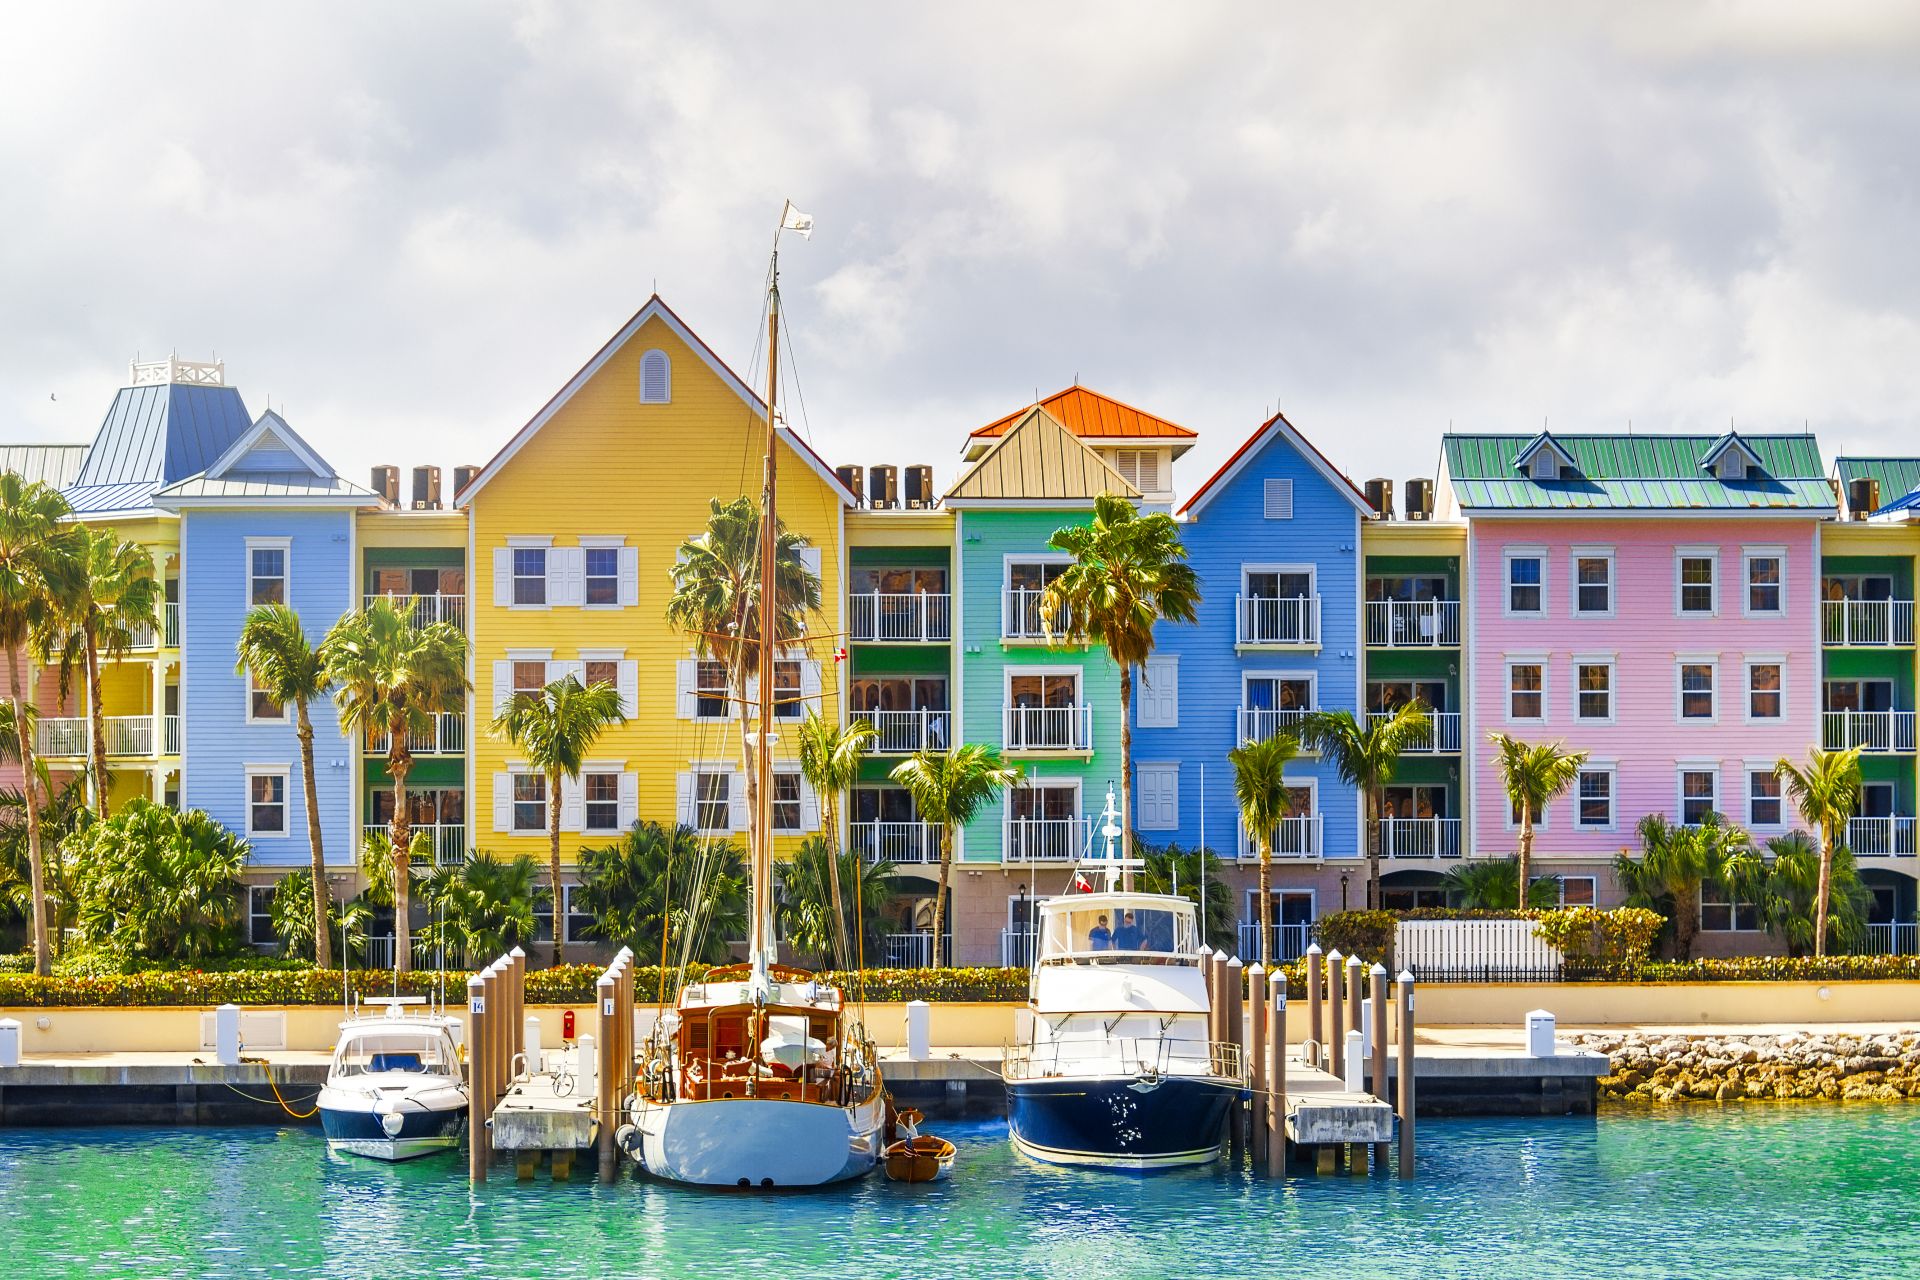 Maisons colorées sur la côte de Nassau, Bahamas.